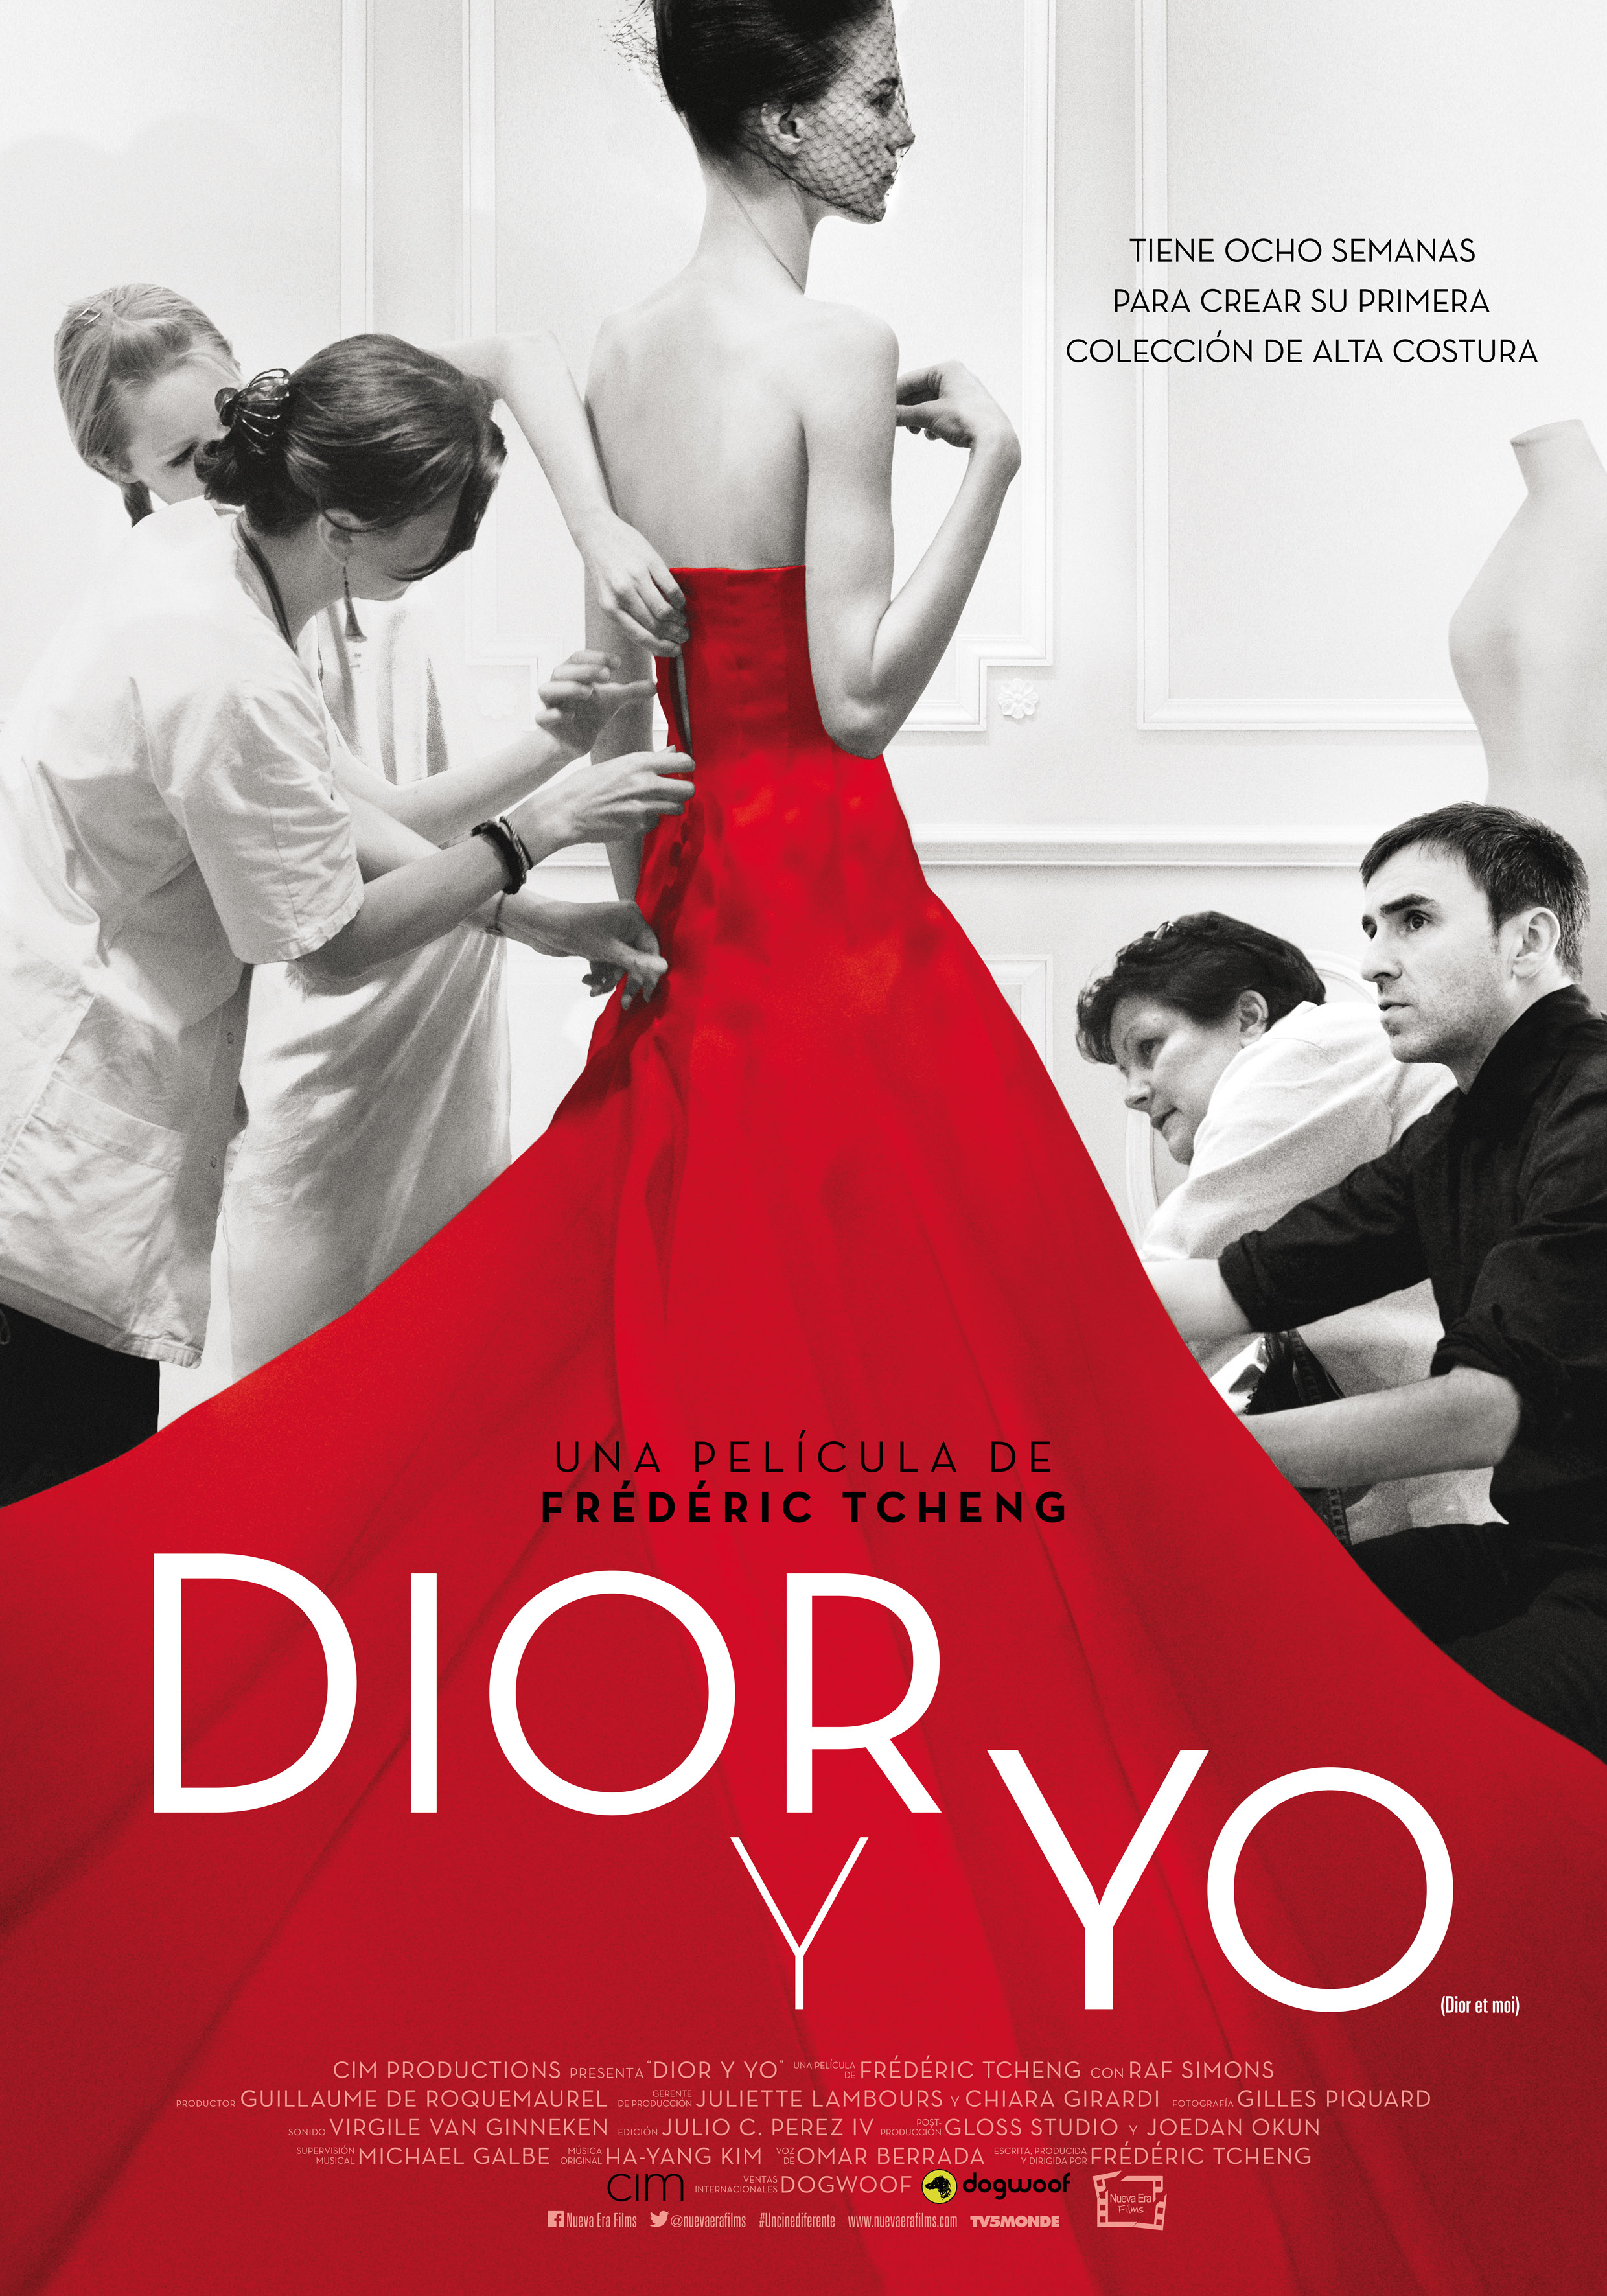 272-Dior-y-Yo-Poster-21x30-300dpi.jpg